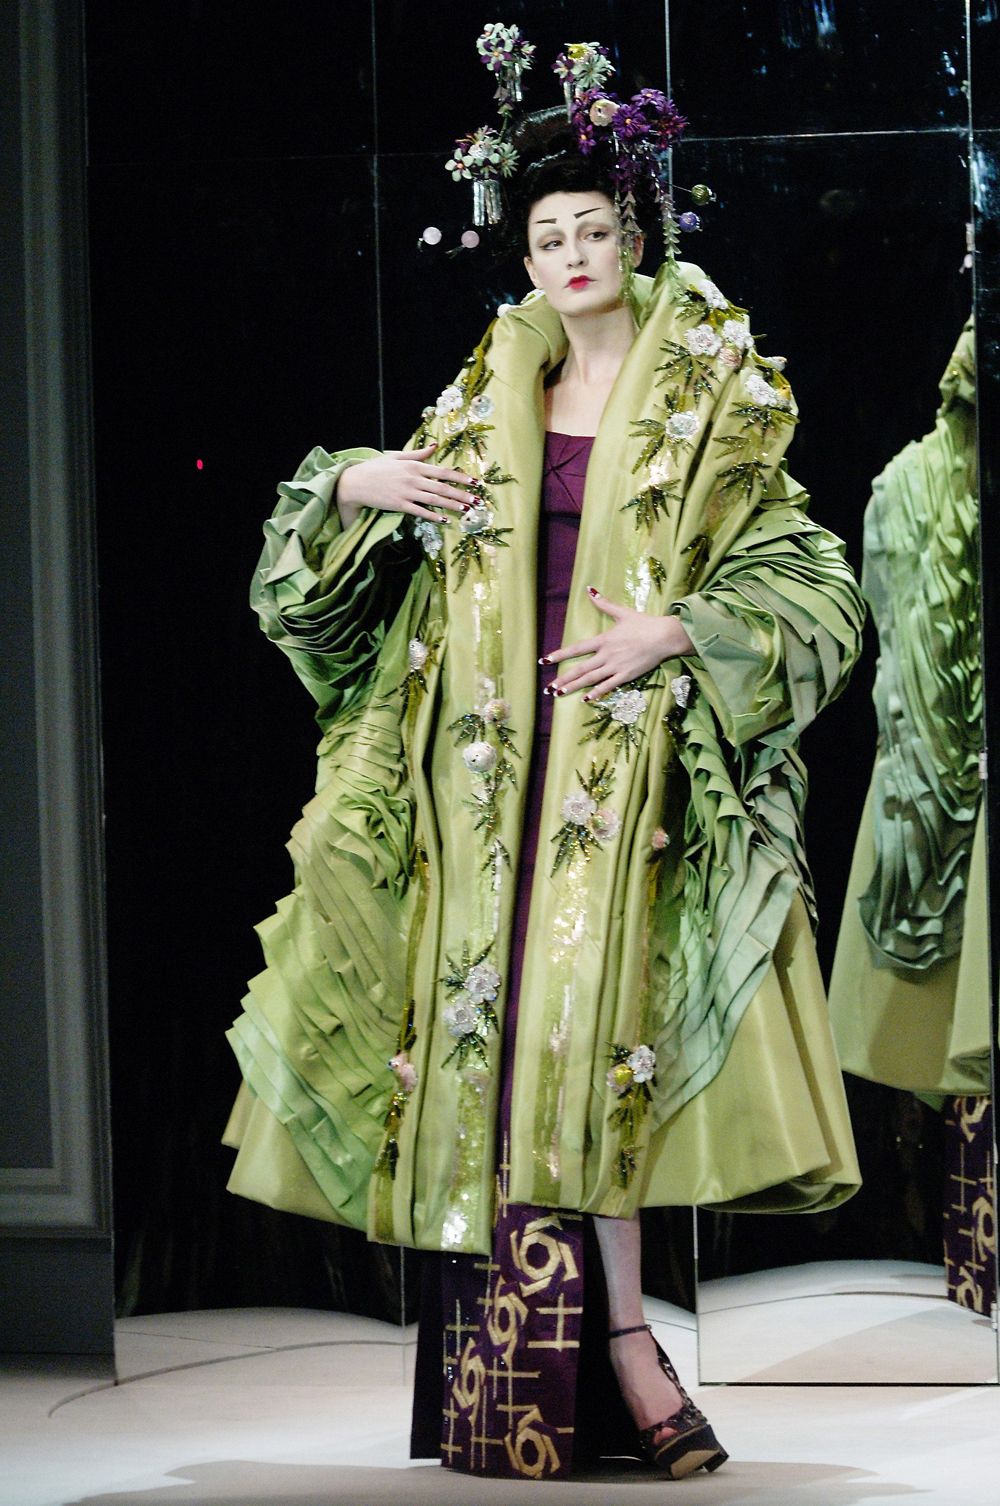 500 thiết kế đẹp nhất và 100 chiếc túi xách của Dior dưới thời John Galliano đã được đấu giá vào ngày 7/6/2021. Mức giá khởi điểm thấp nhất là 36 USD và mức giá cao nhất là 2720 USD.